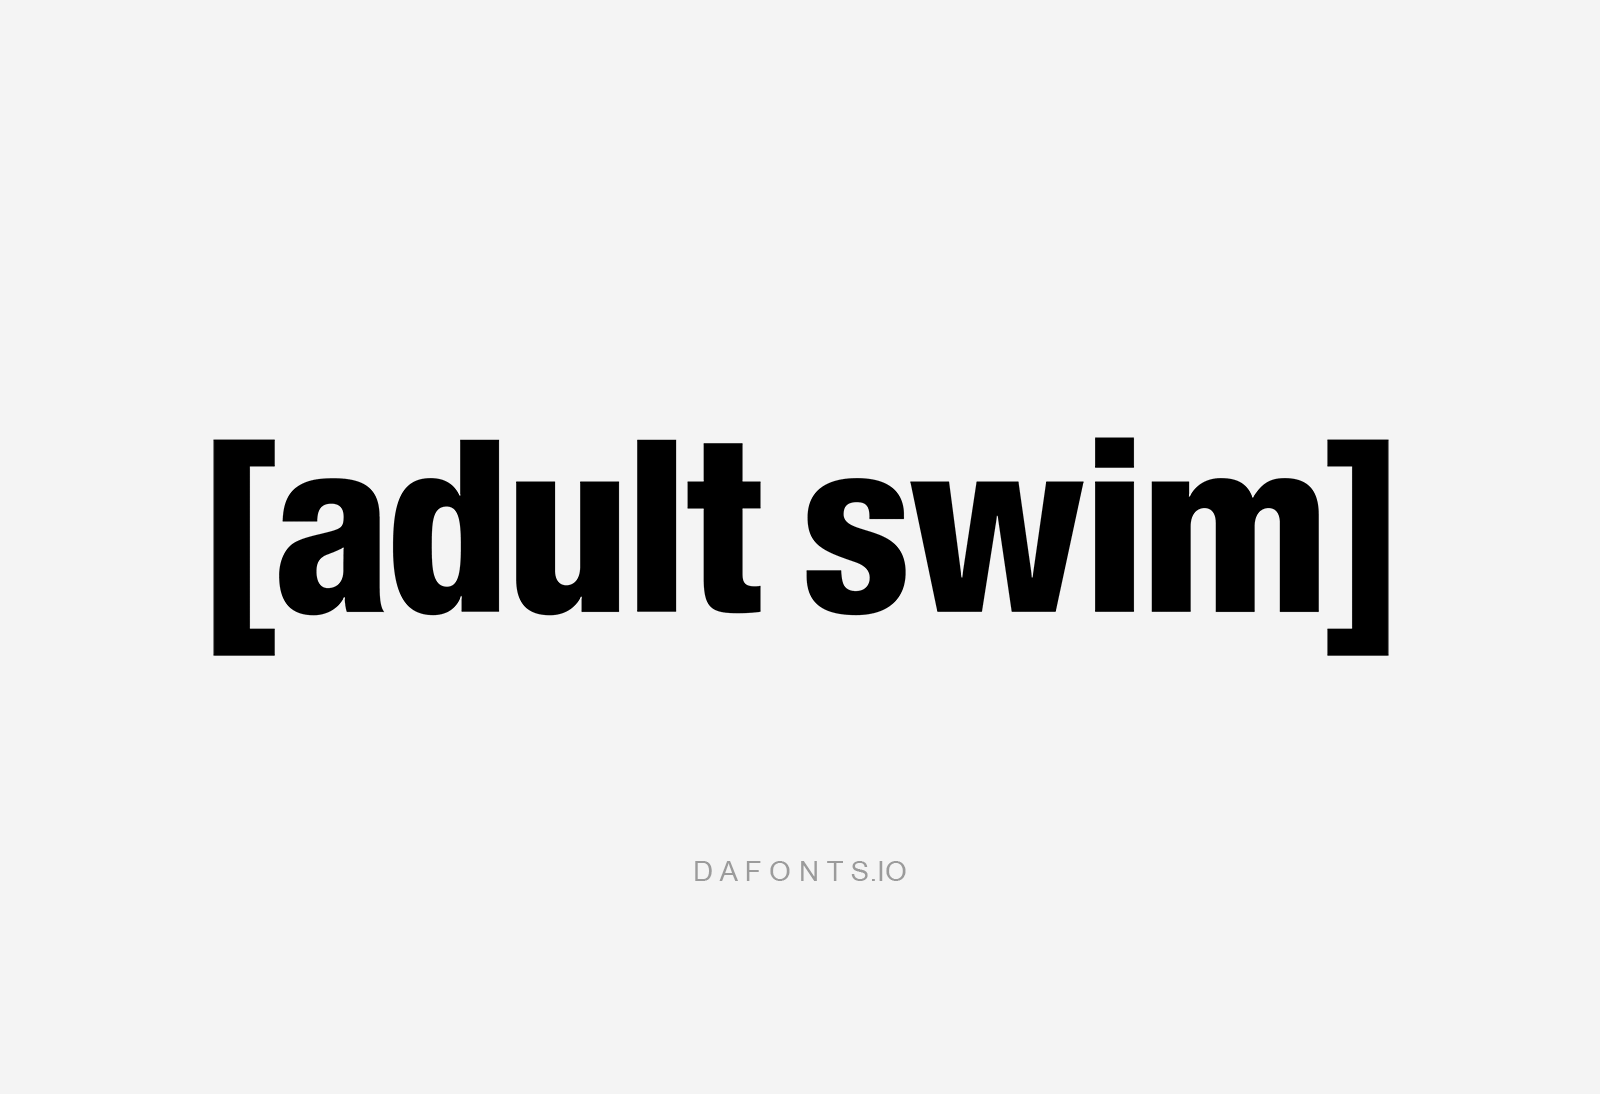 Adult Swim Font